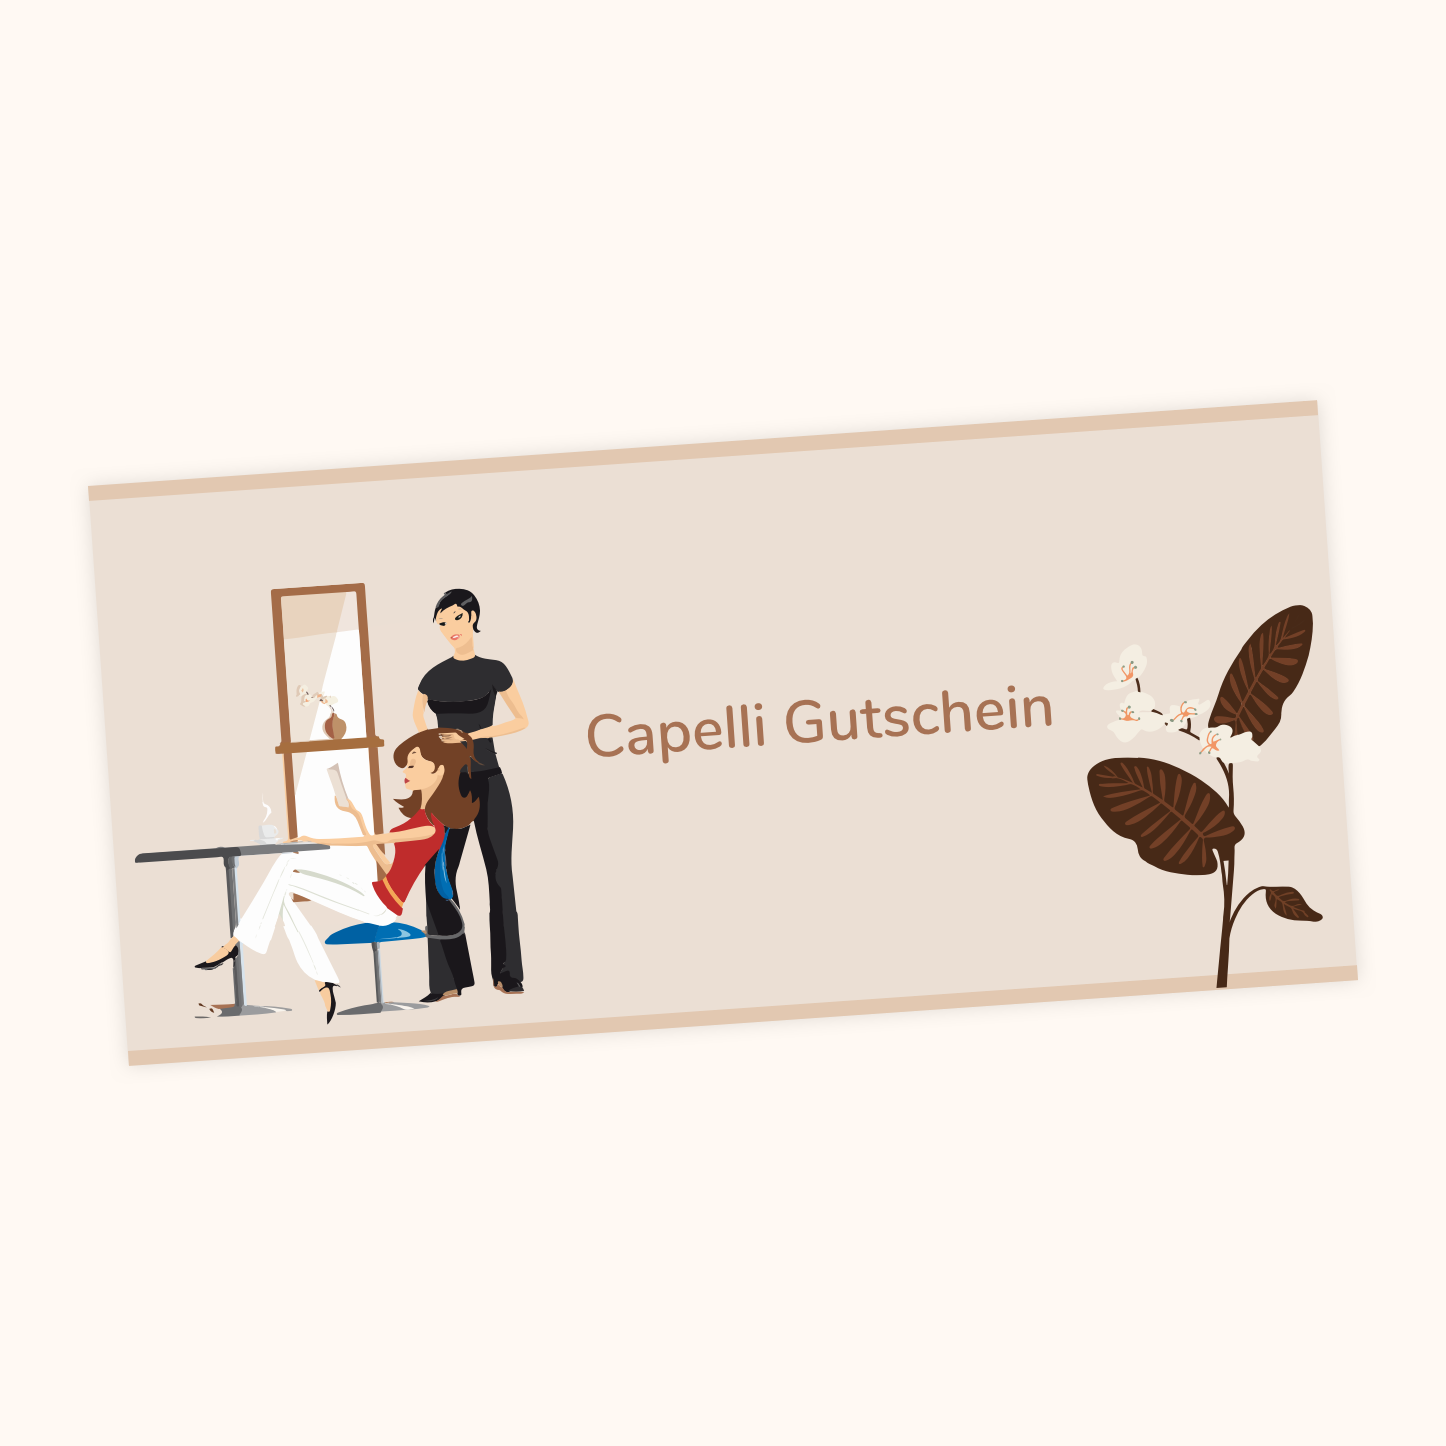 Capelli Gutschein 25 € - 100 €